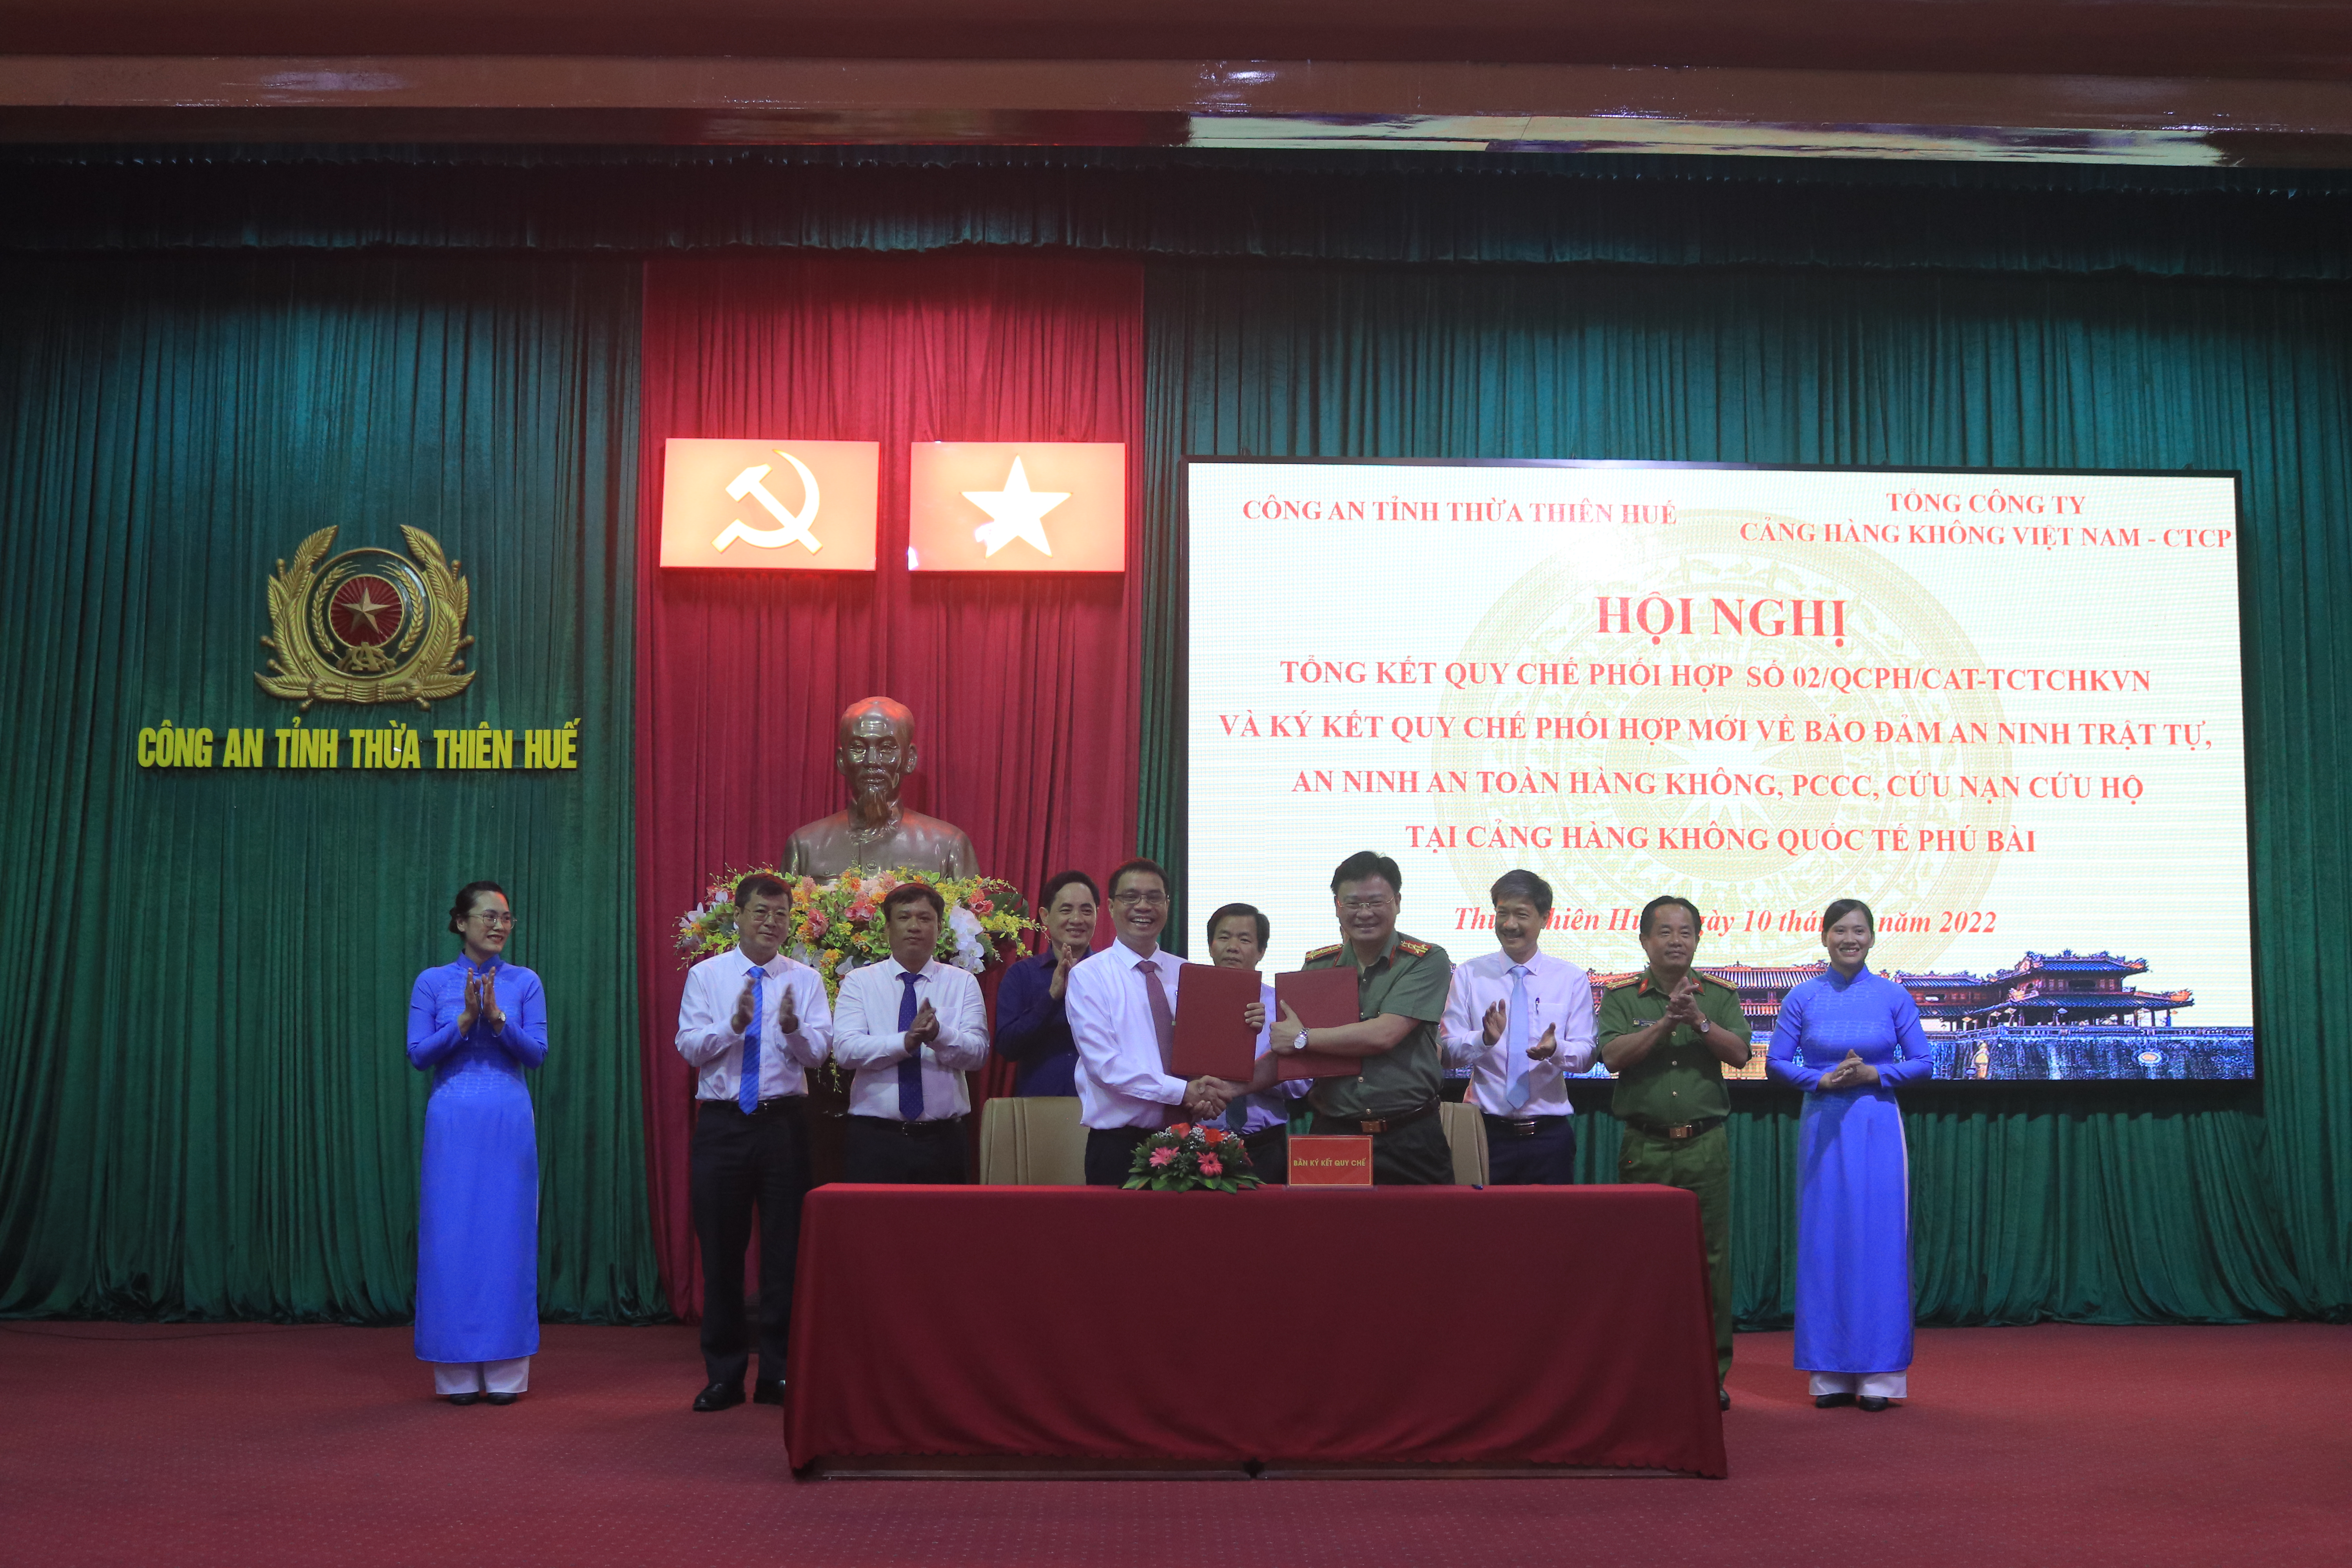 ACV và Công an tỉnh Thừa Thiên Huế ký kết Quy chế phối hợp về đảm bảo an ninh trật tự, an toàn hàng không, phòng cháy chữa cháy, cứu nạn cứu hộ tại  Cảng hàng không quốc tế Phú Bài